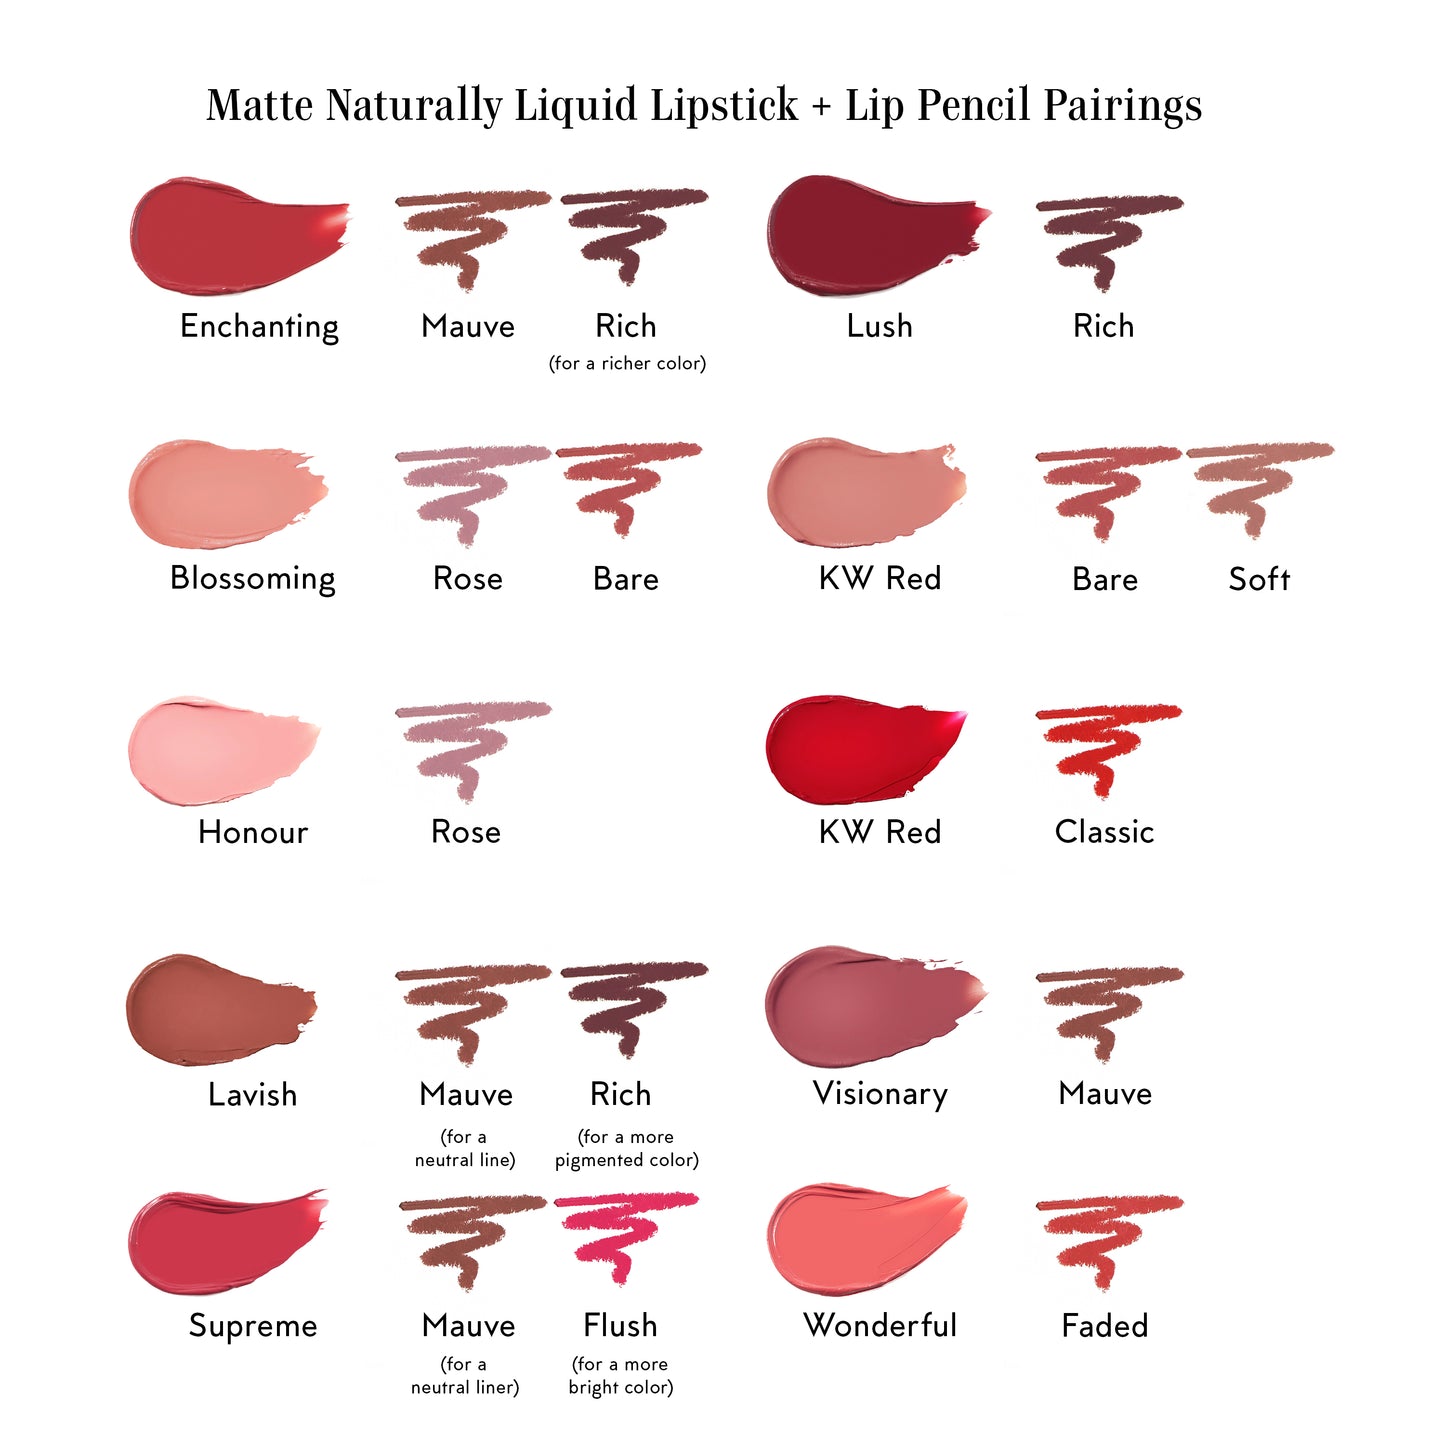 Matte, Naturally Liquid Lipstick--Enthralling